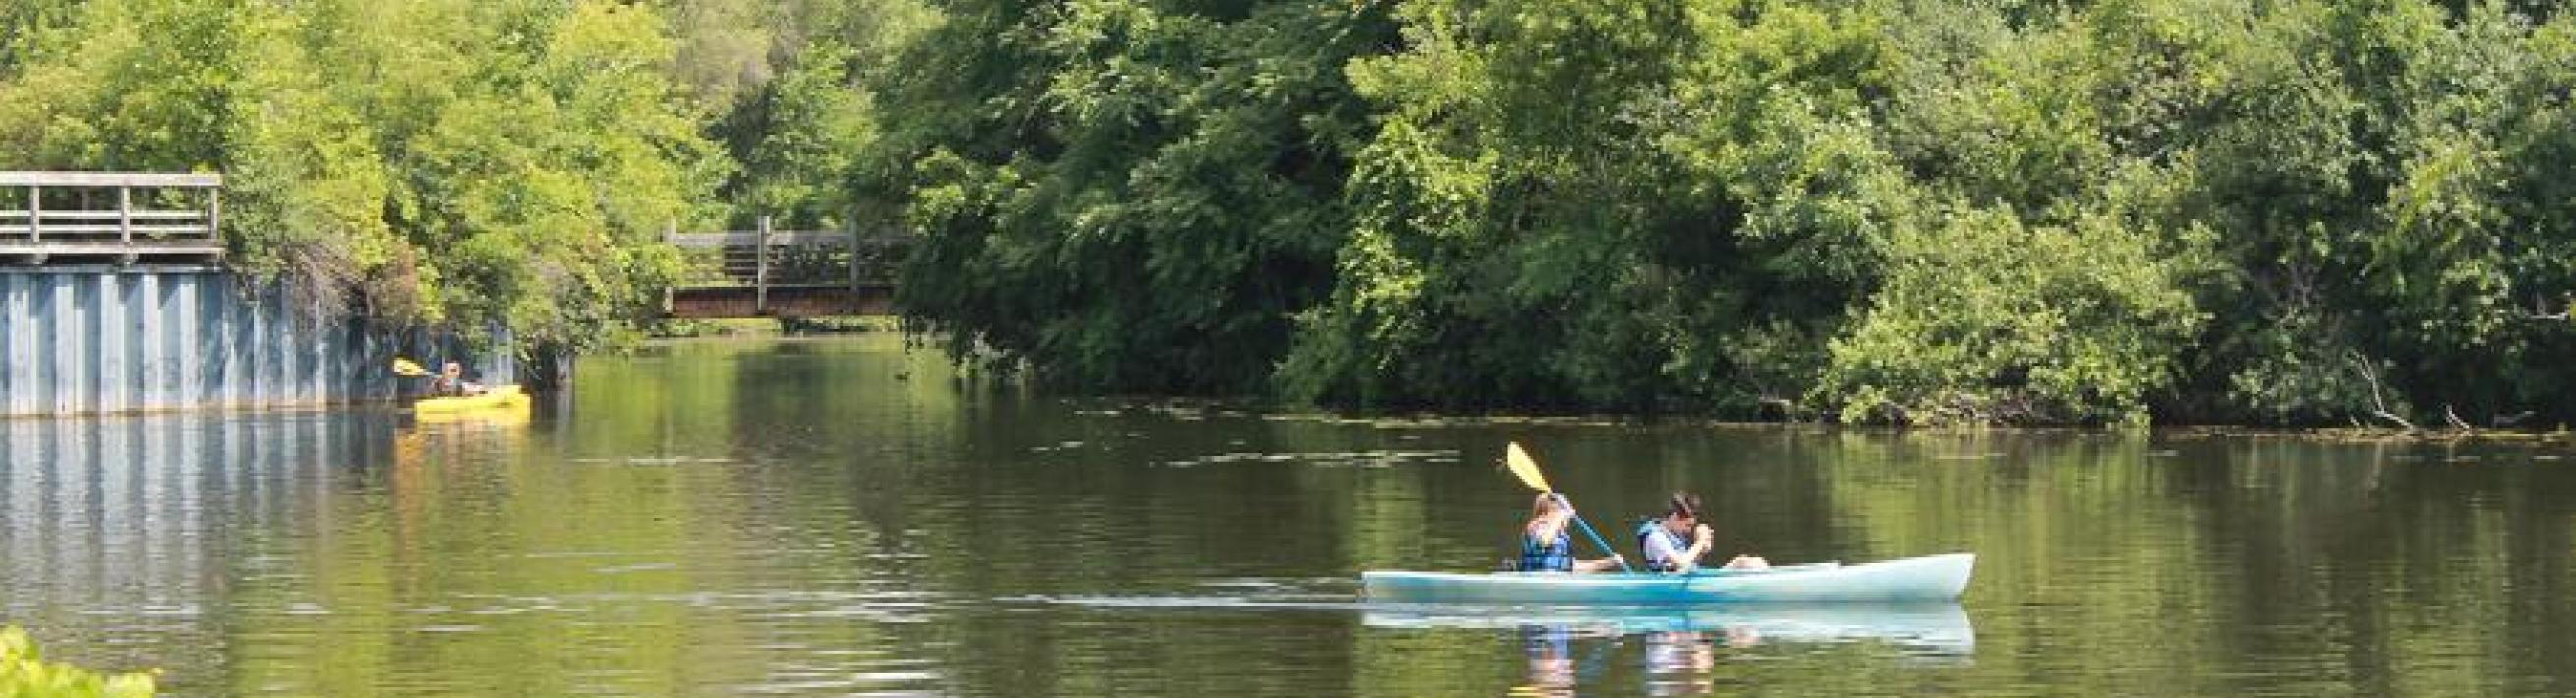 Canoe on river